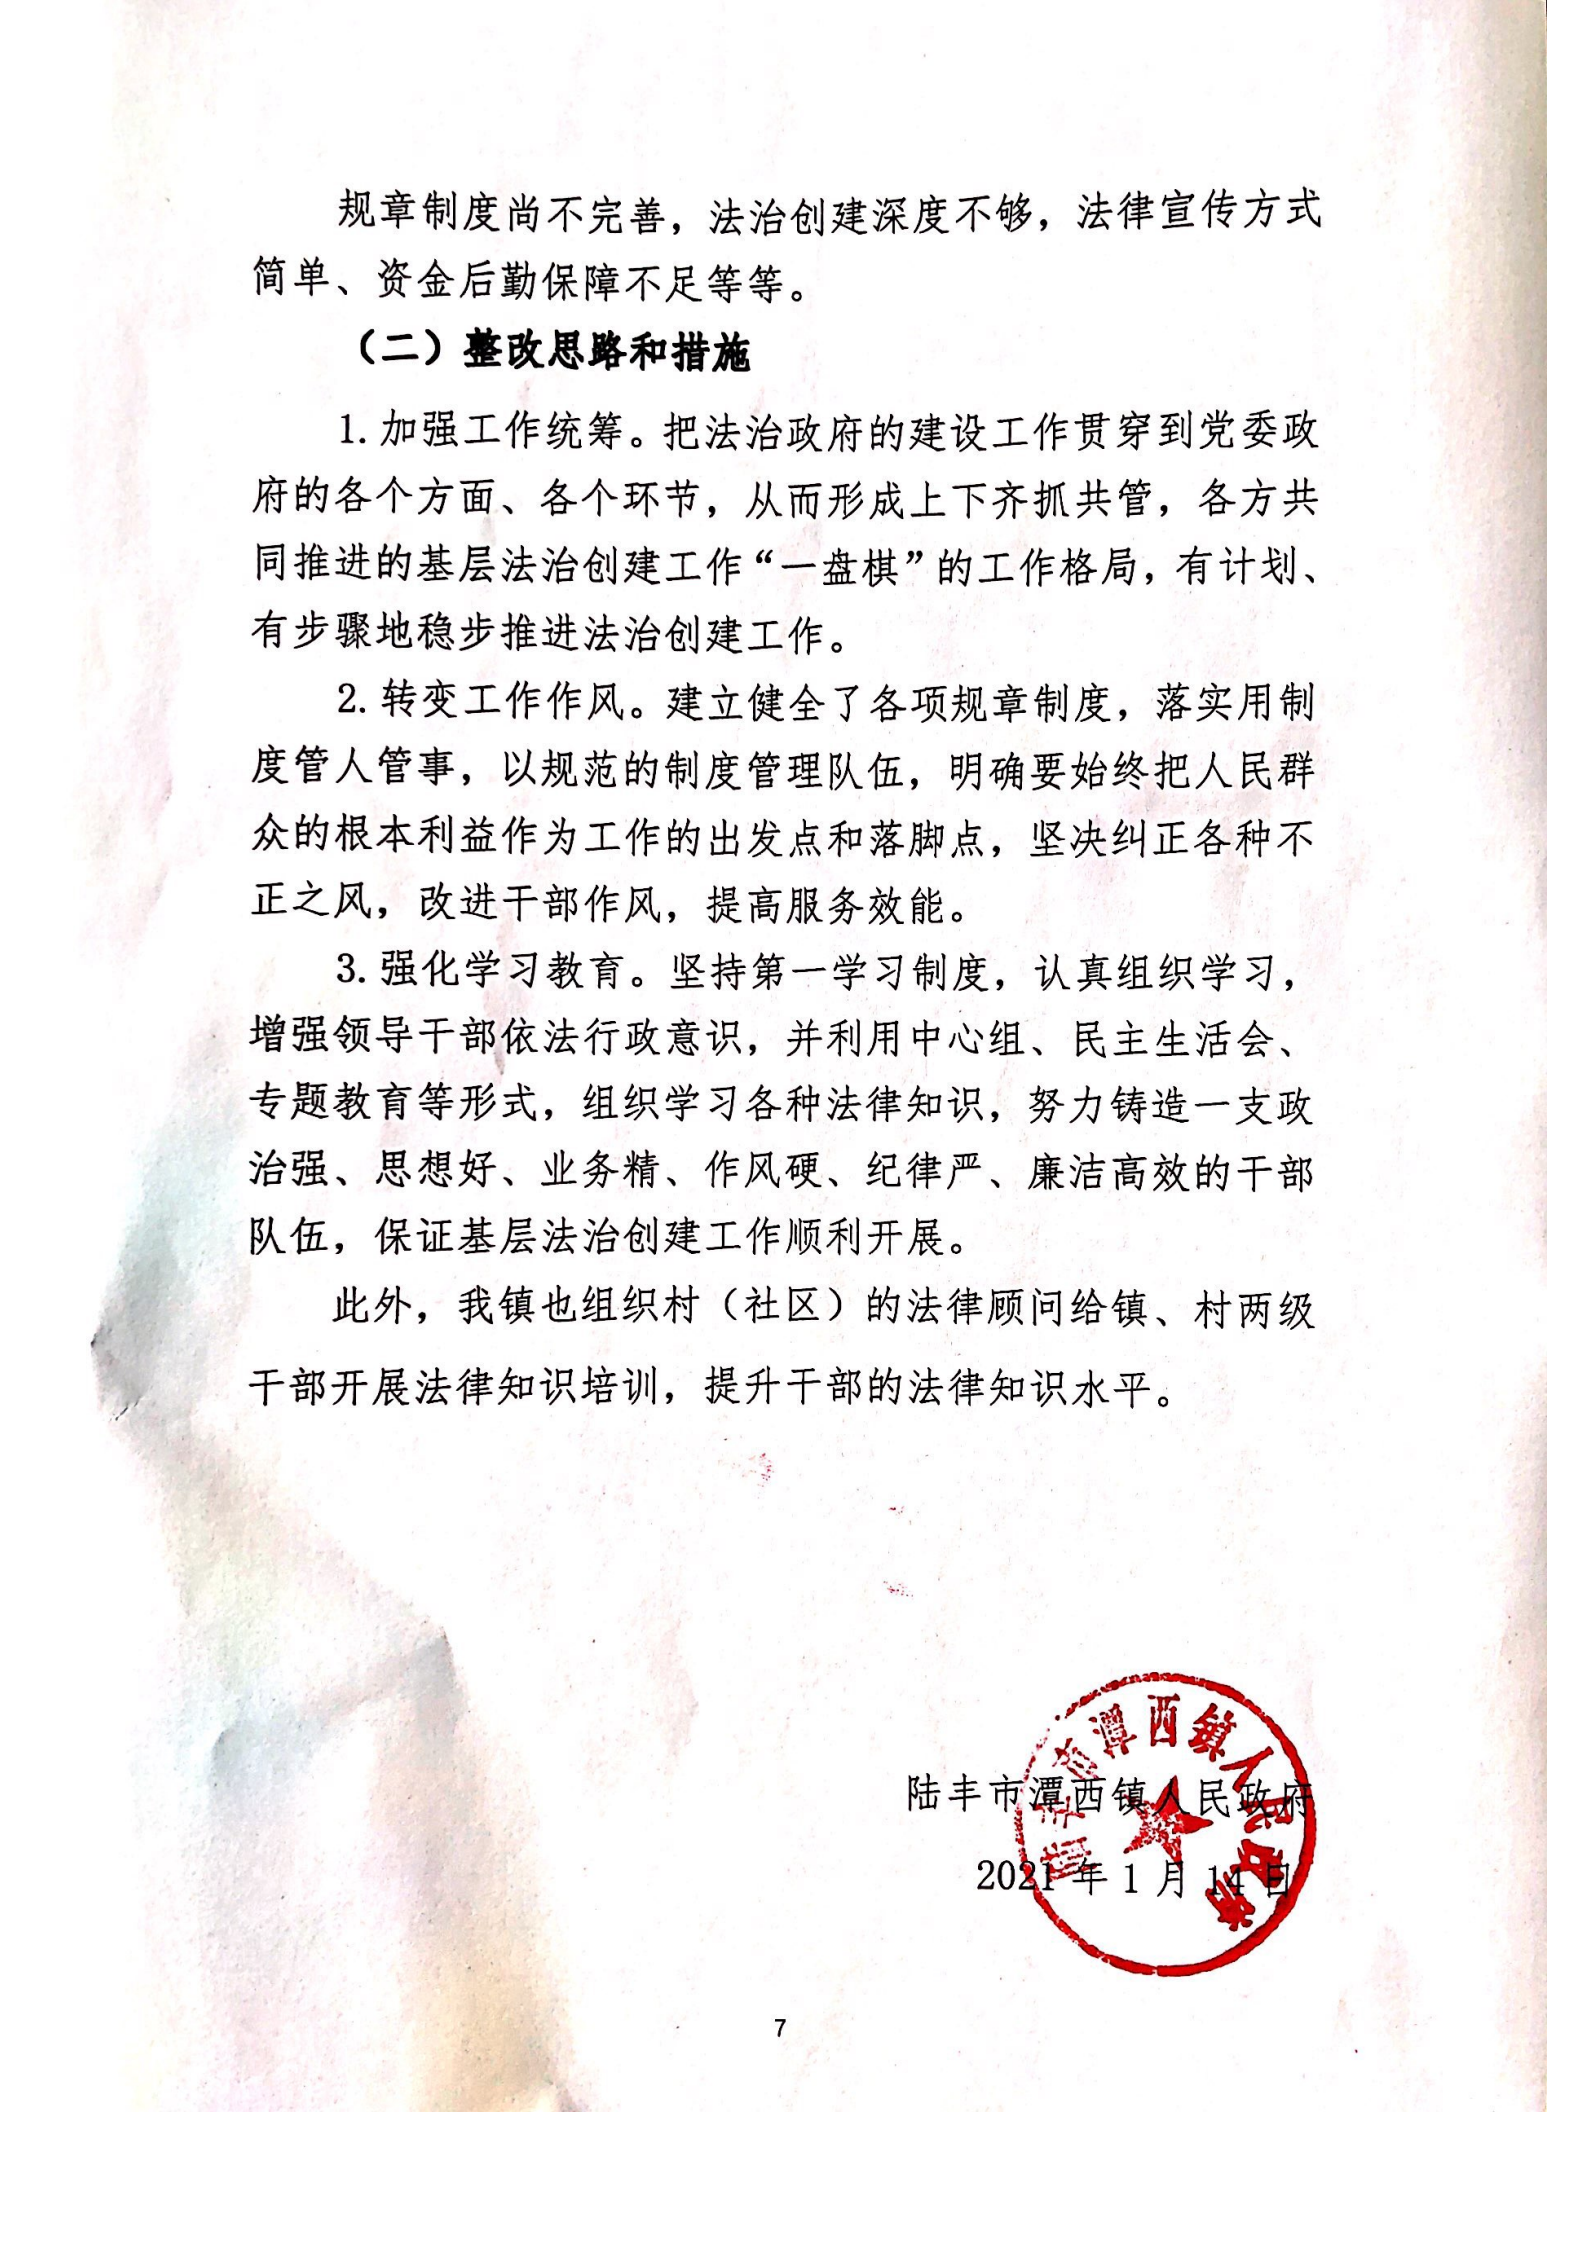 潭西镇人民政府2020年度法治报告1_06.png